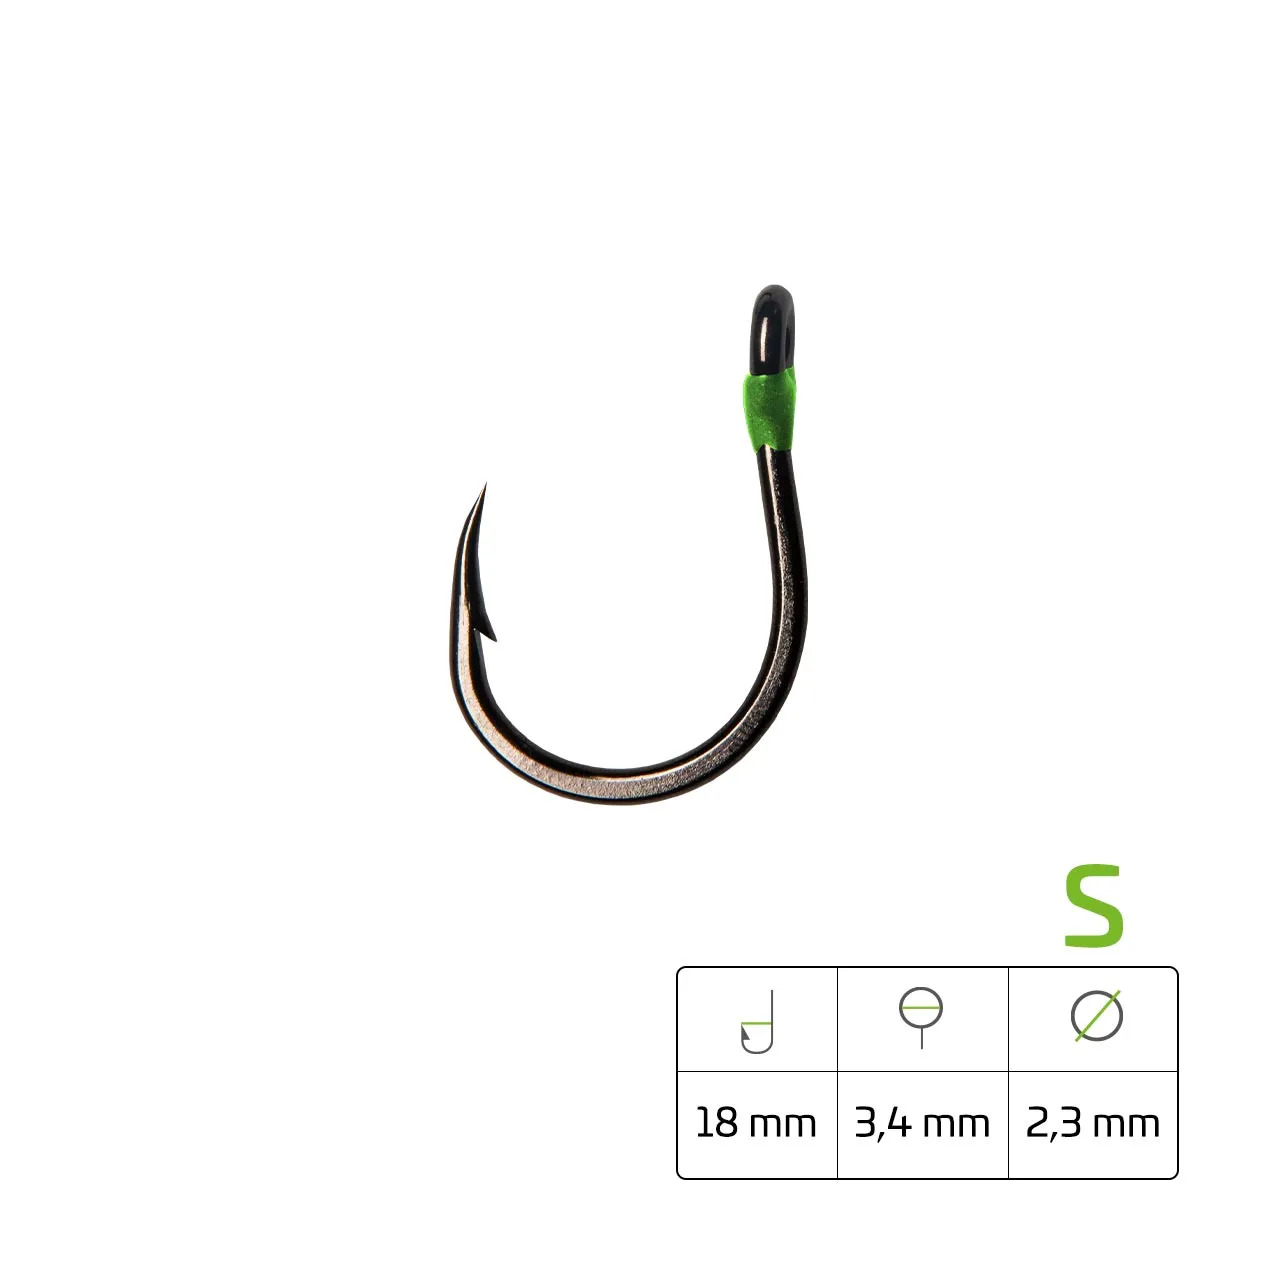 Zeck-Fishing Somovska udica Striker 2.0 - Moderna jednokraka udica za ribolov soma